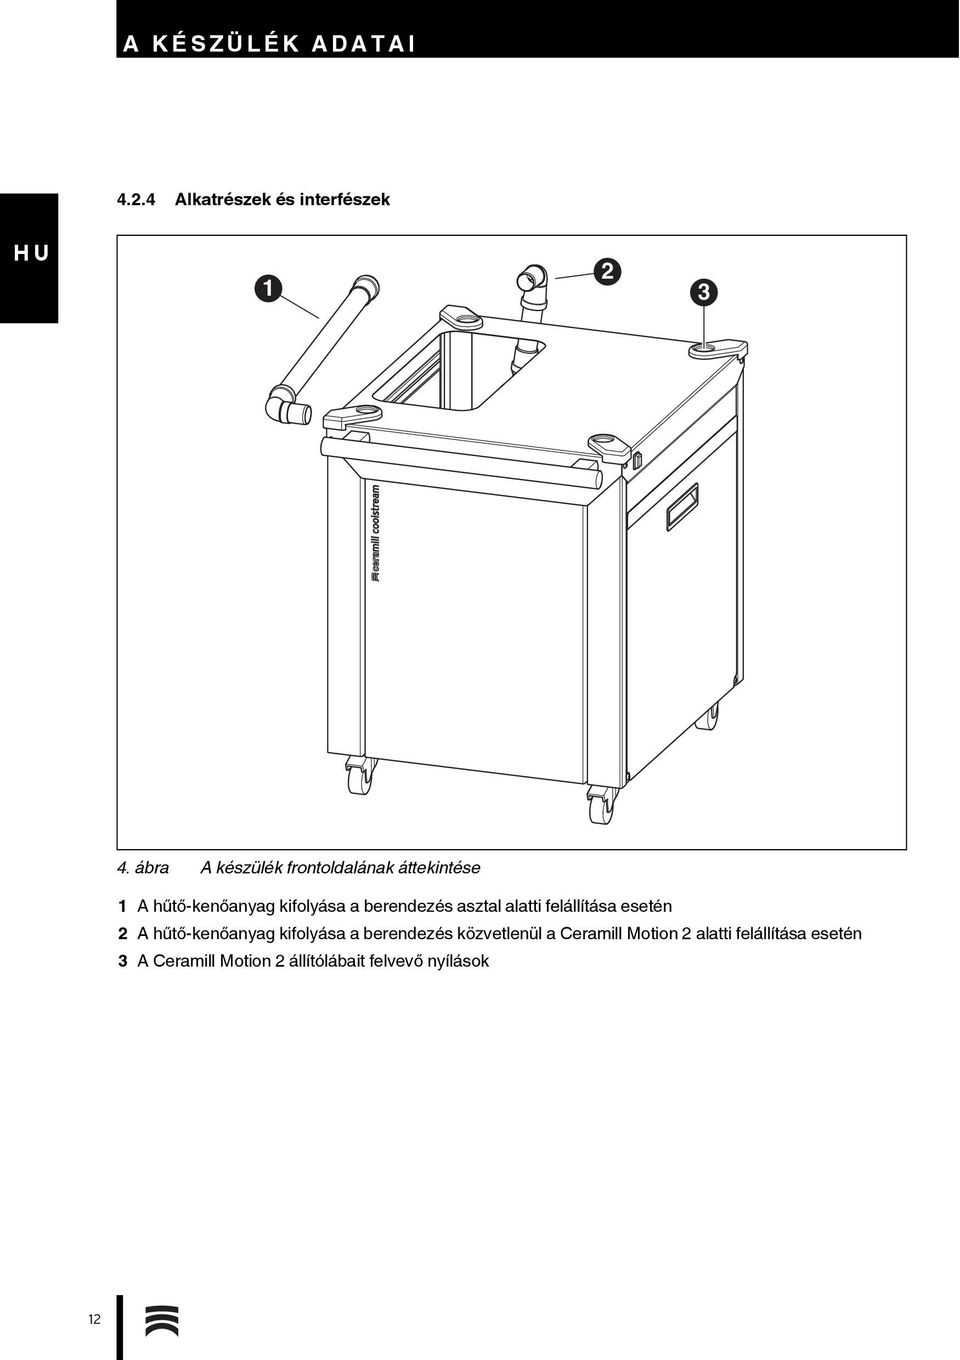 berendezés asztal alatti felállítása esetén 2 A hűtő-kenőanyag kifolyása a